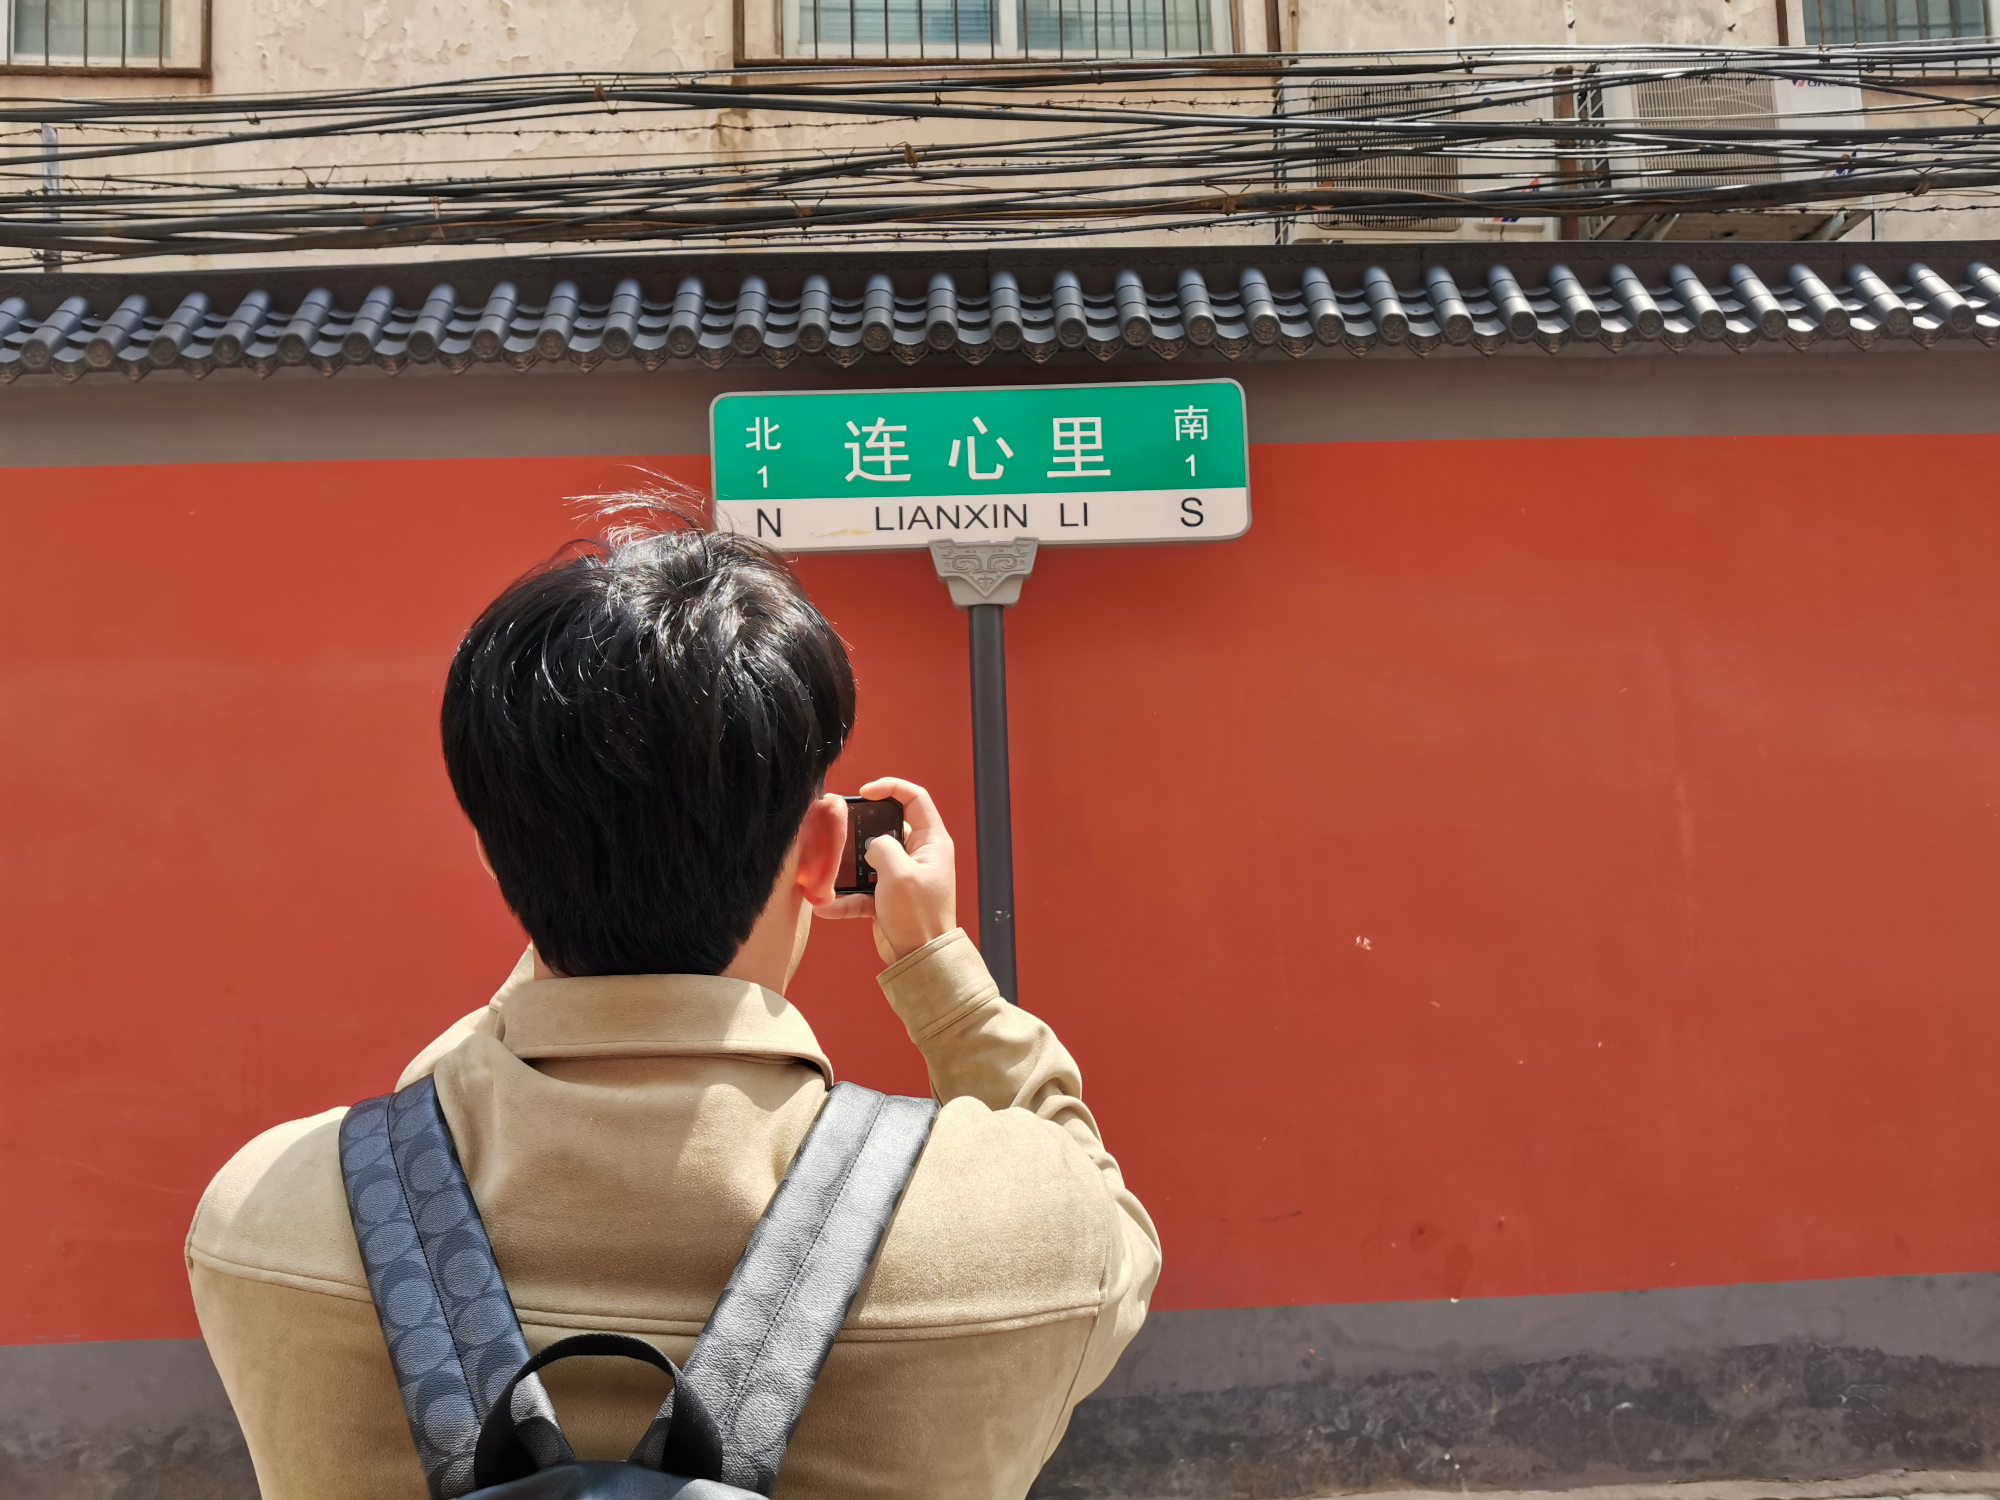 郑州最浪漫的小巷:800米长,因名字而火,女孩纷纷来拍